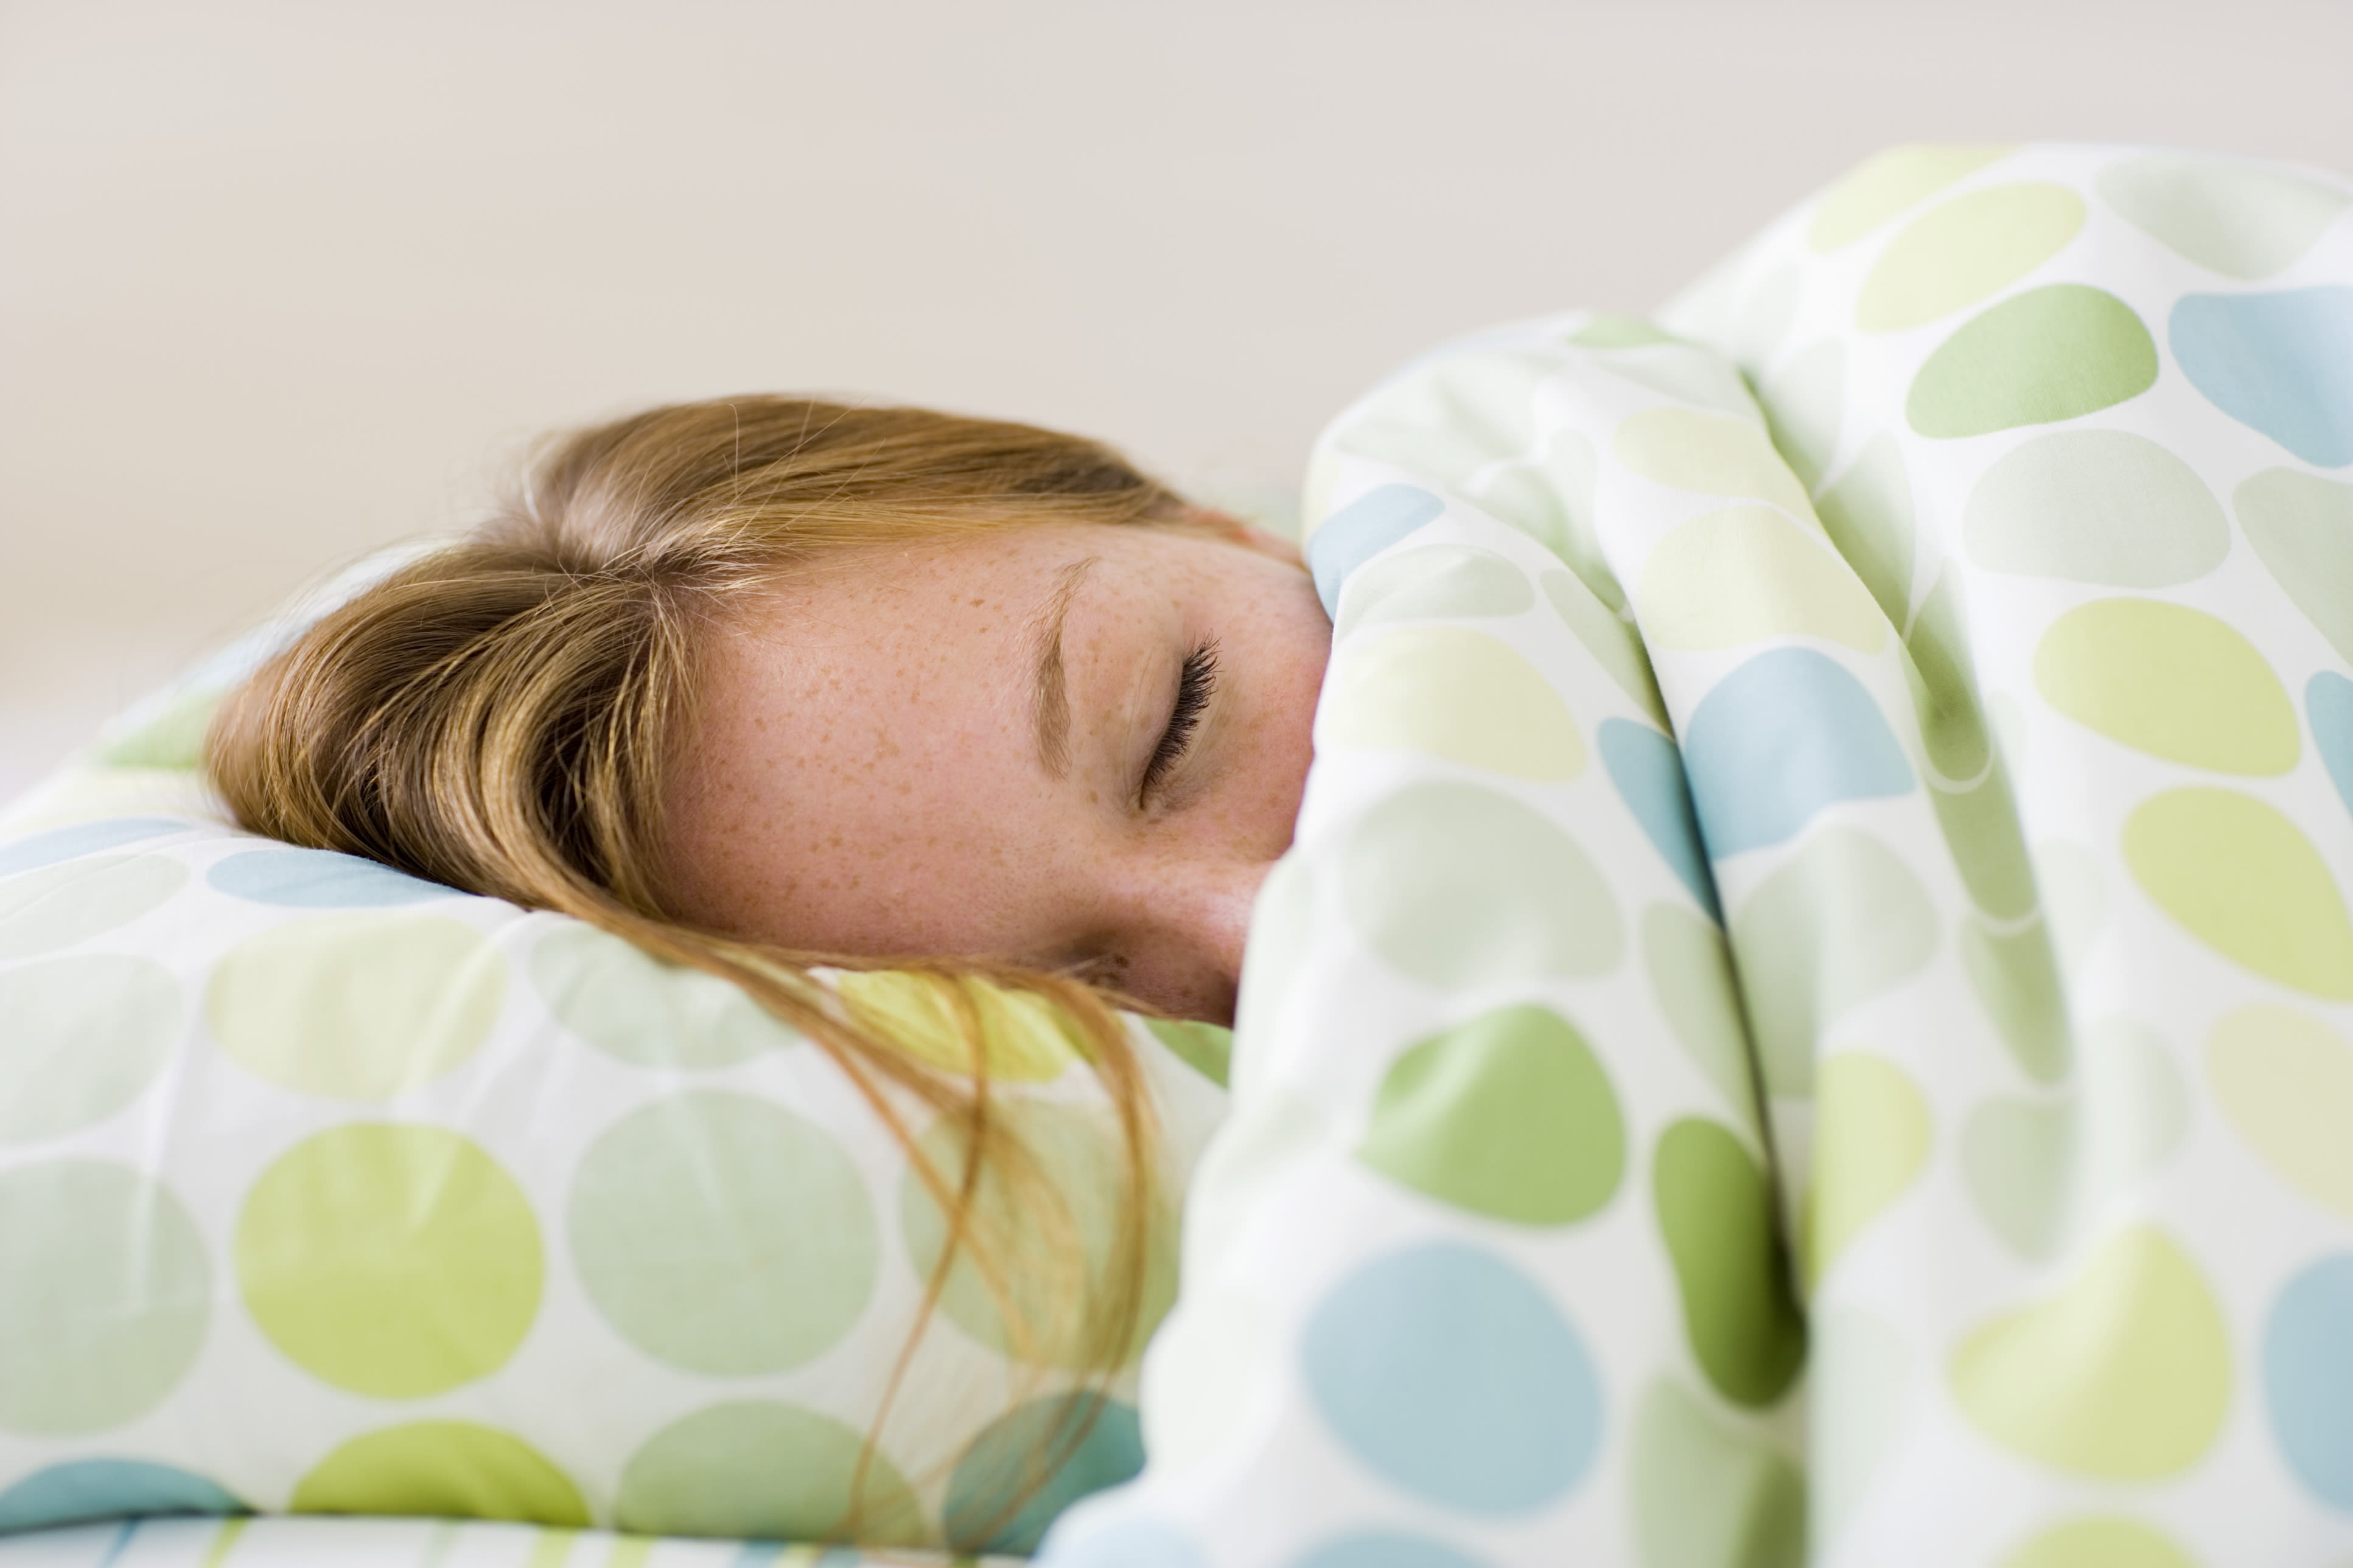 3866px x 2577px - The reason your teen sleeps till noon (2014) | CNN